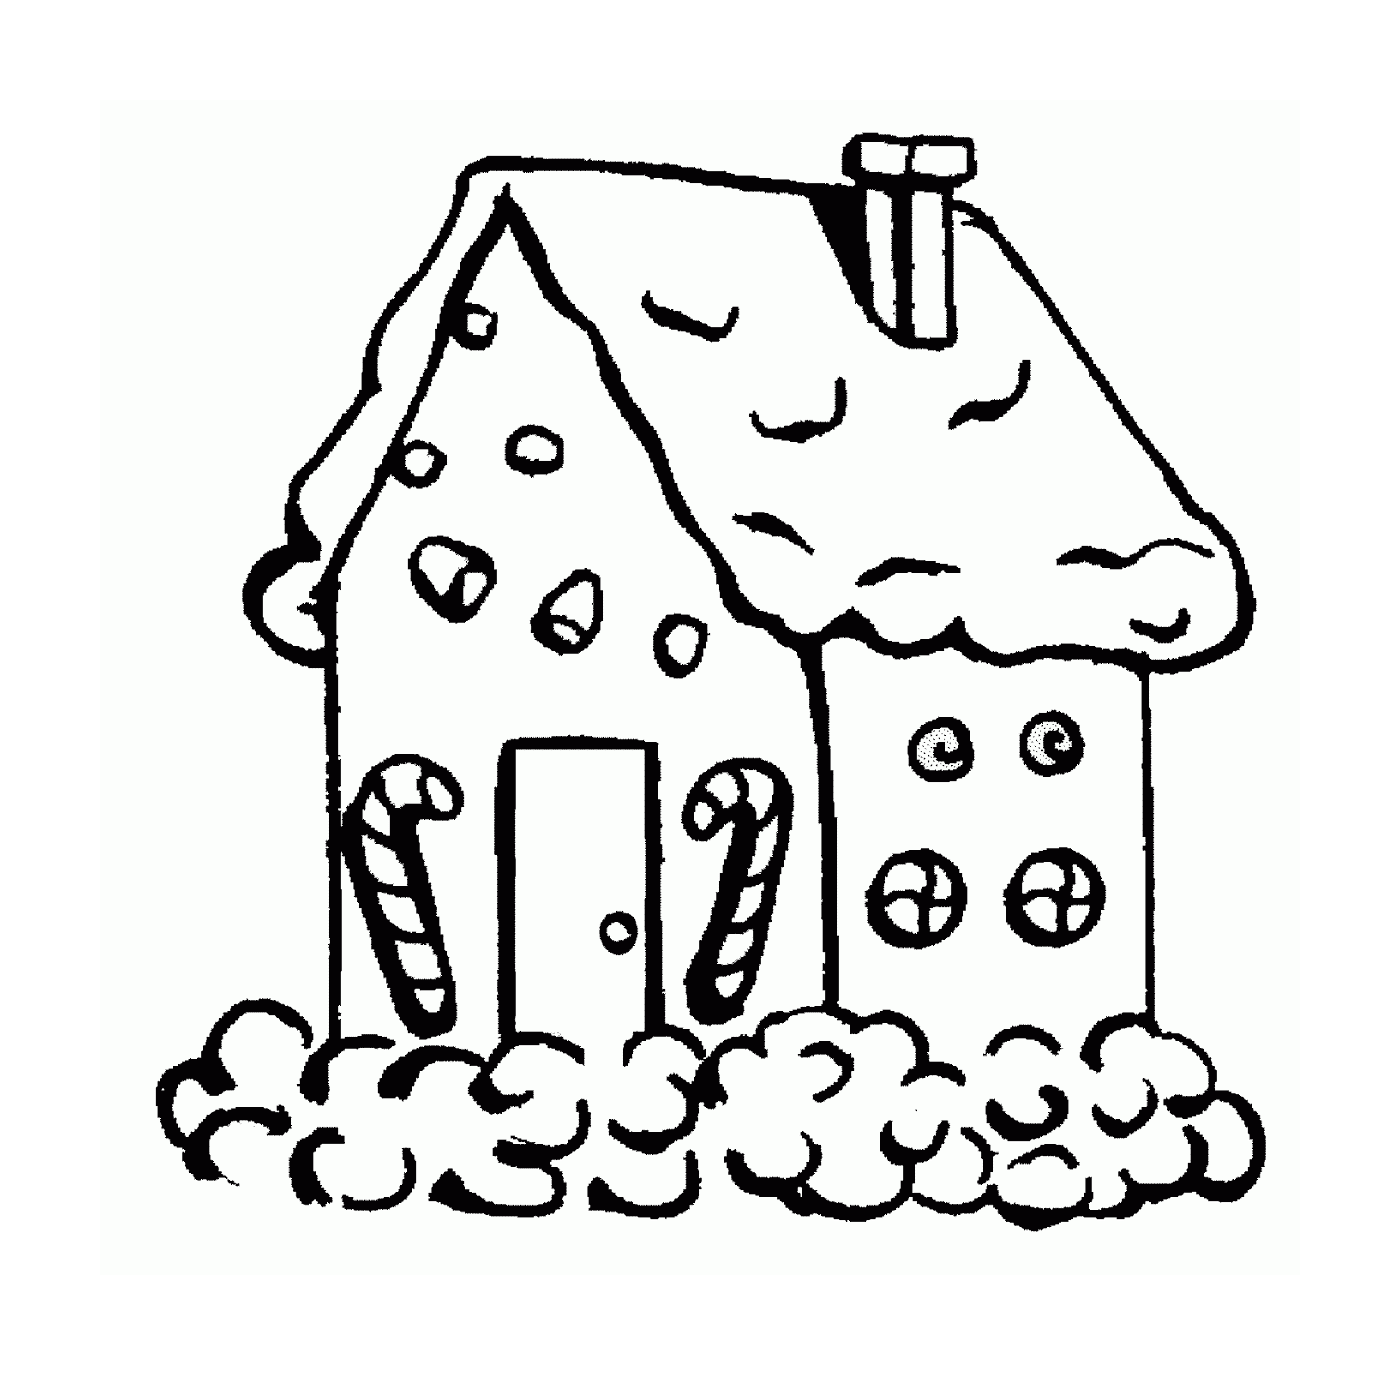  Casa fatta di pan di zenzero coperto di neve 